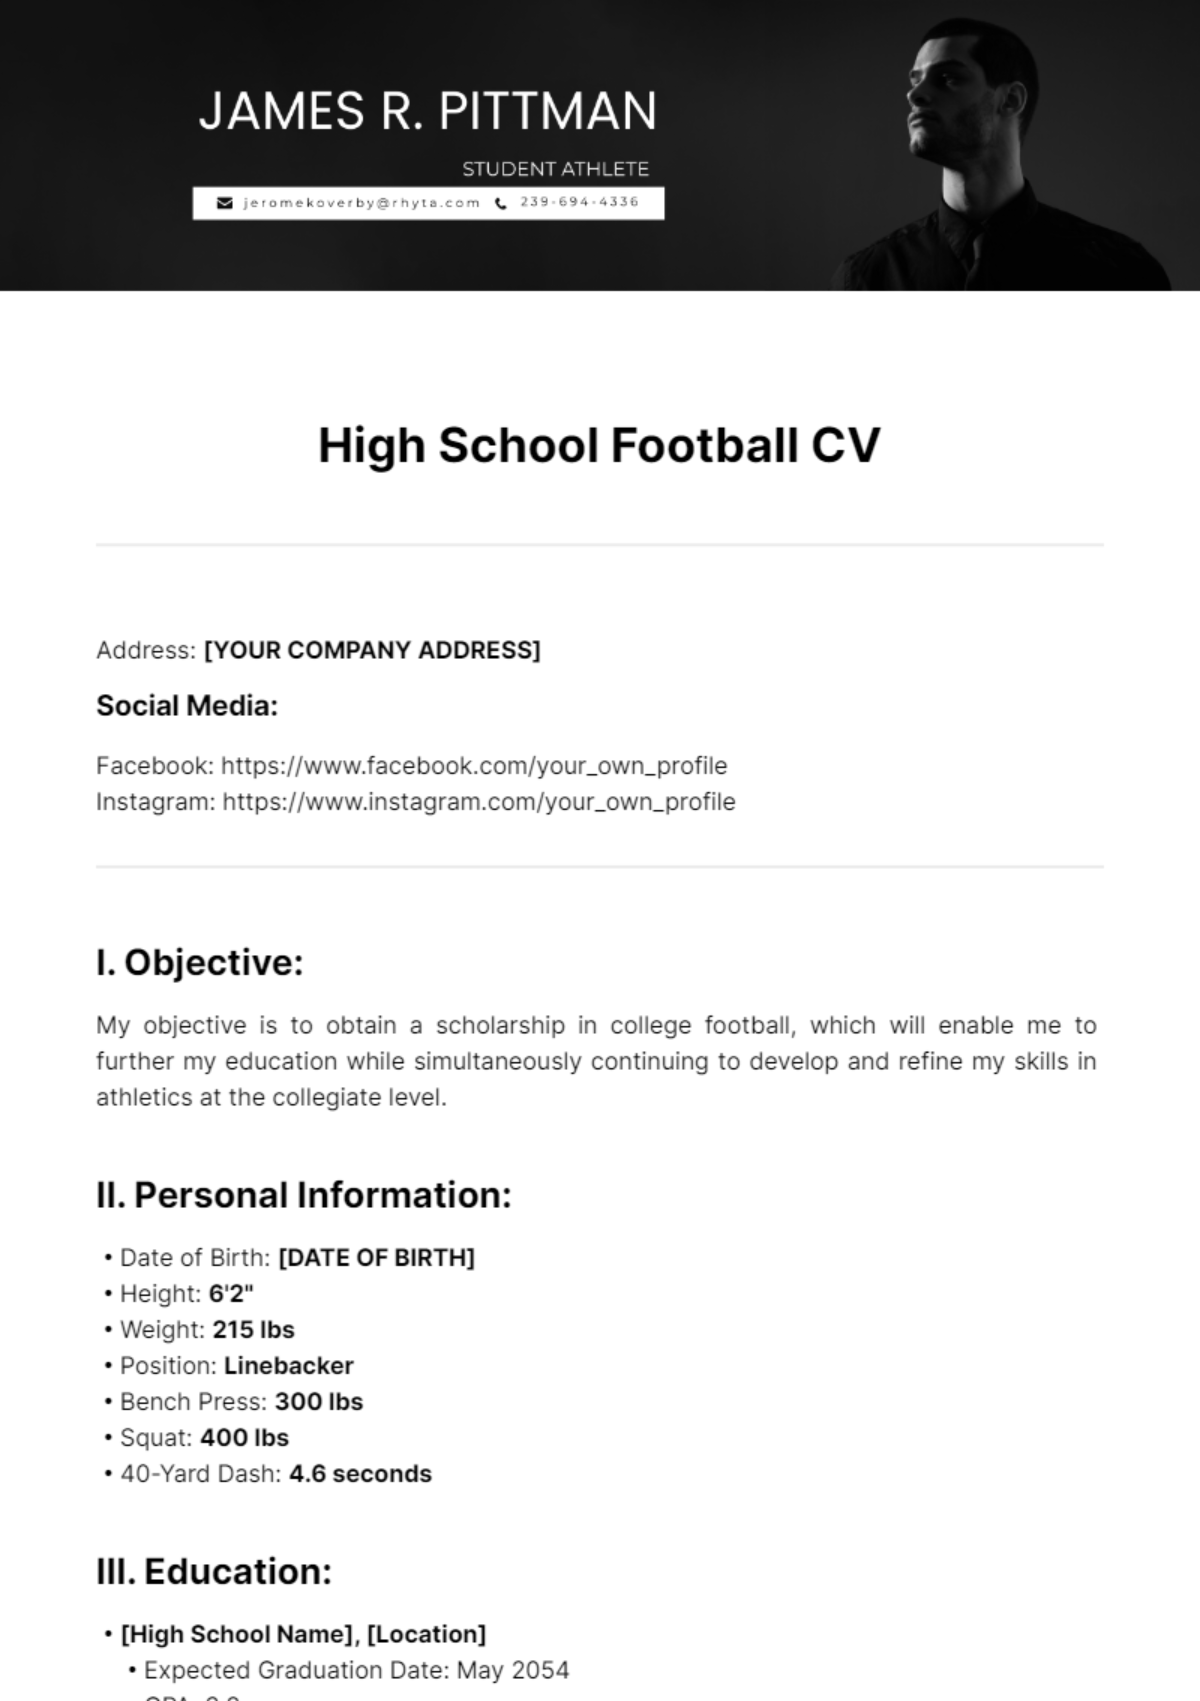 High School Football CV Template